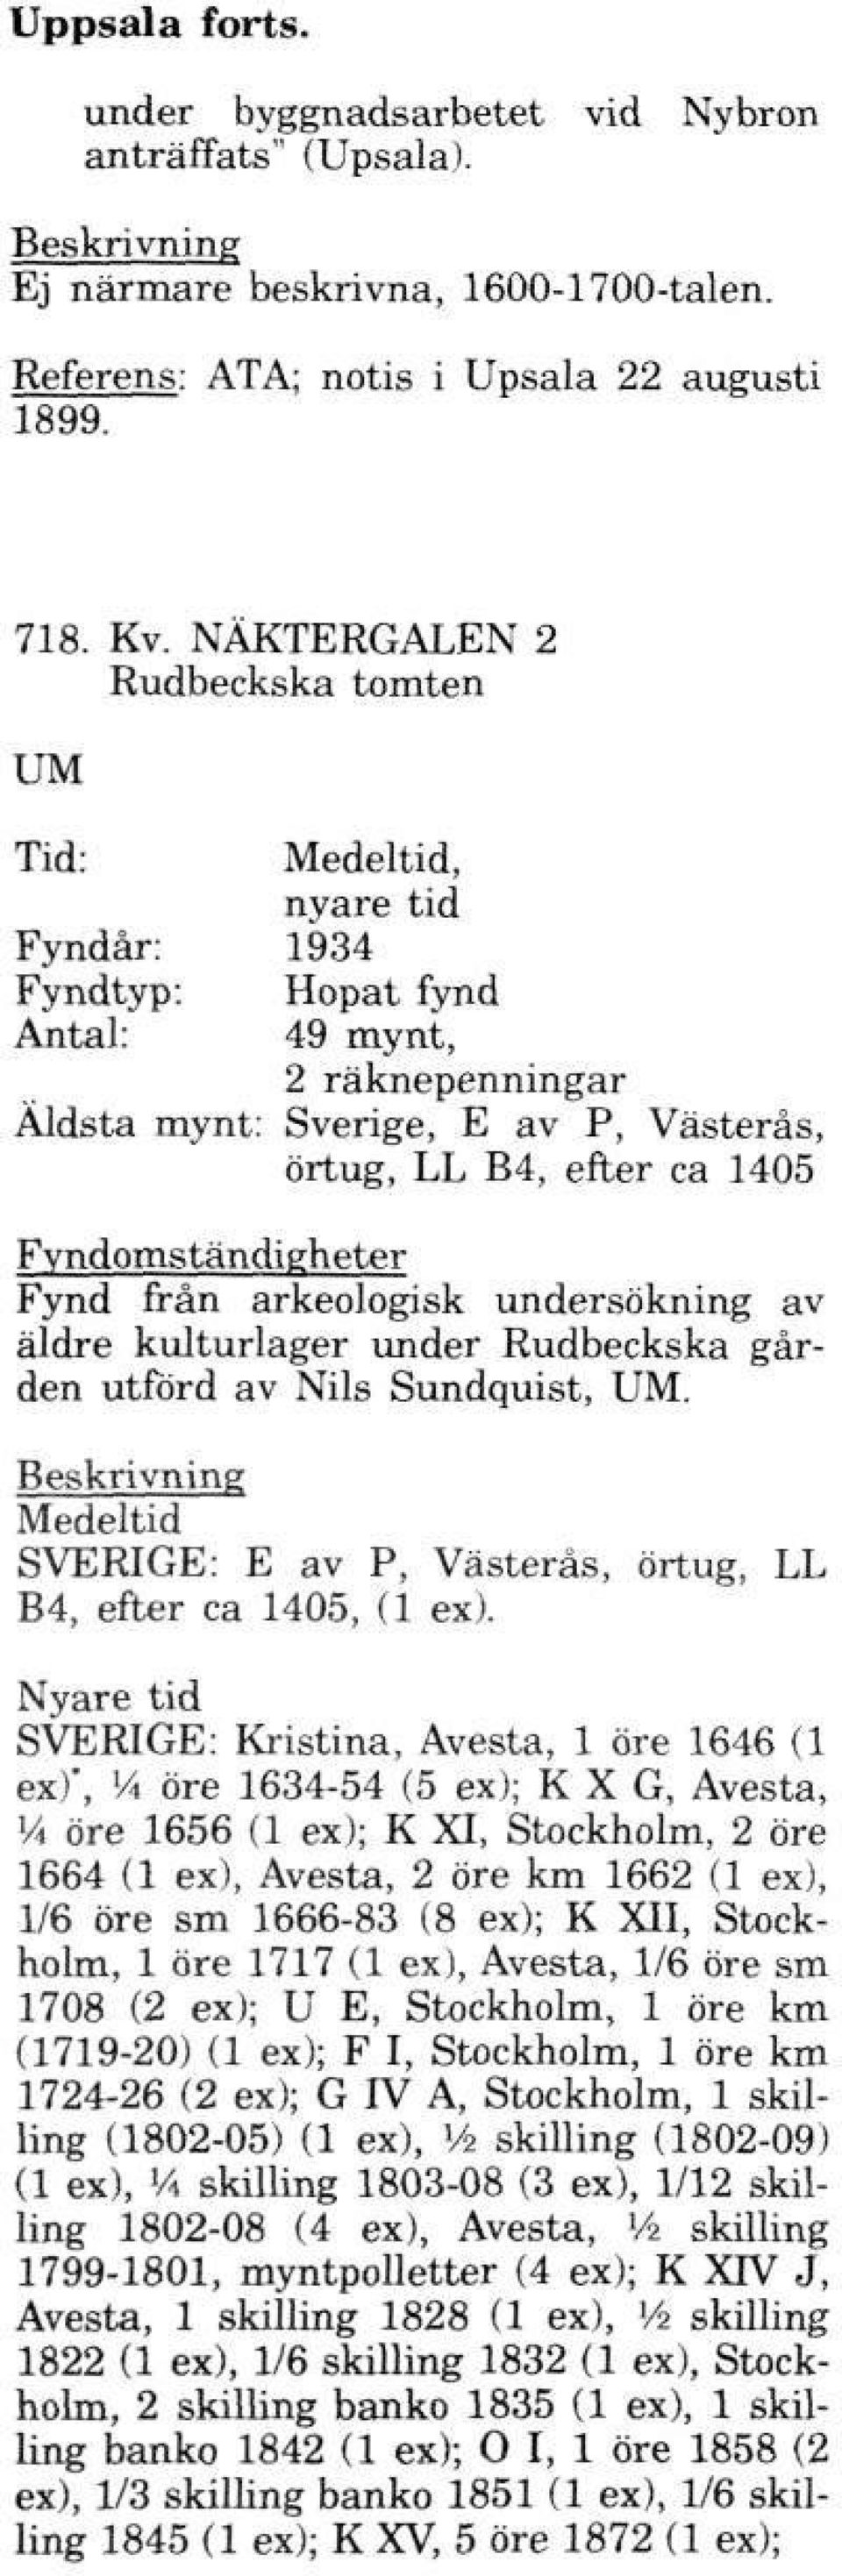 undersökning av äldre kulturlager under Rudbeckska gården utförd av Nils Sundquist, UM. Medeltid SVERIGE: E av P, Västerås, örtug, LL B4, efter ca 1405, (1 ex).